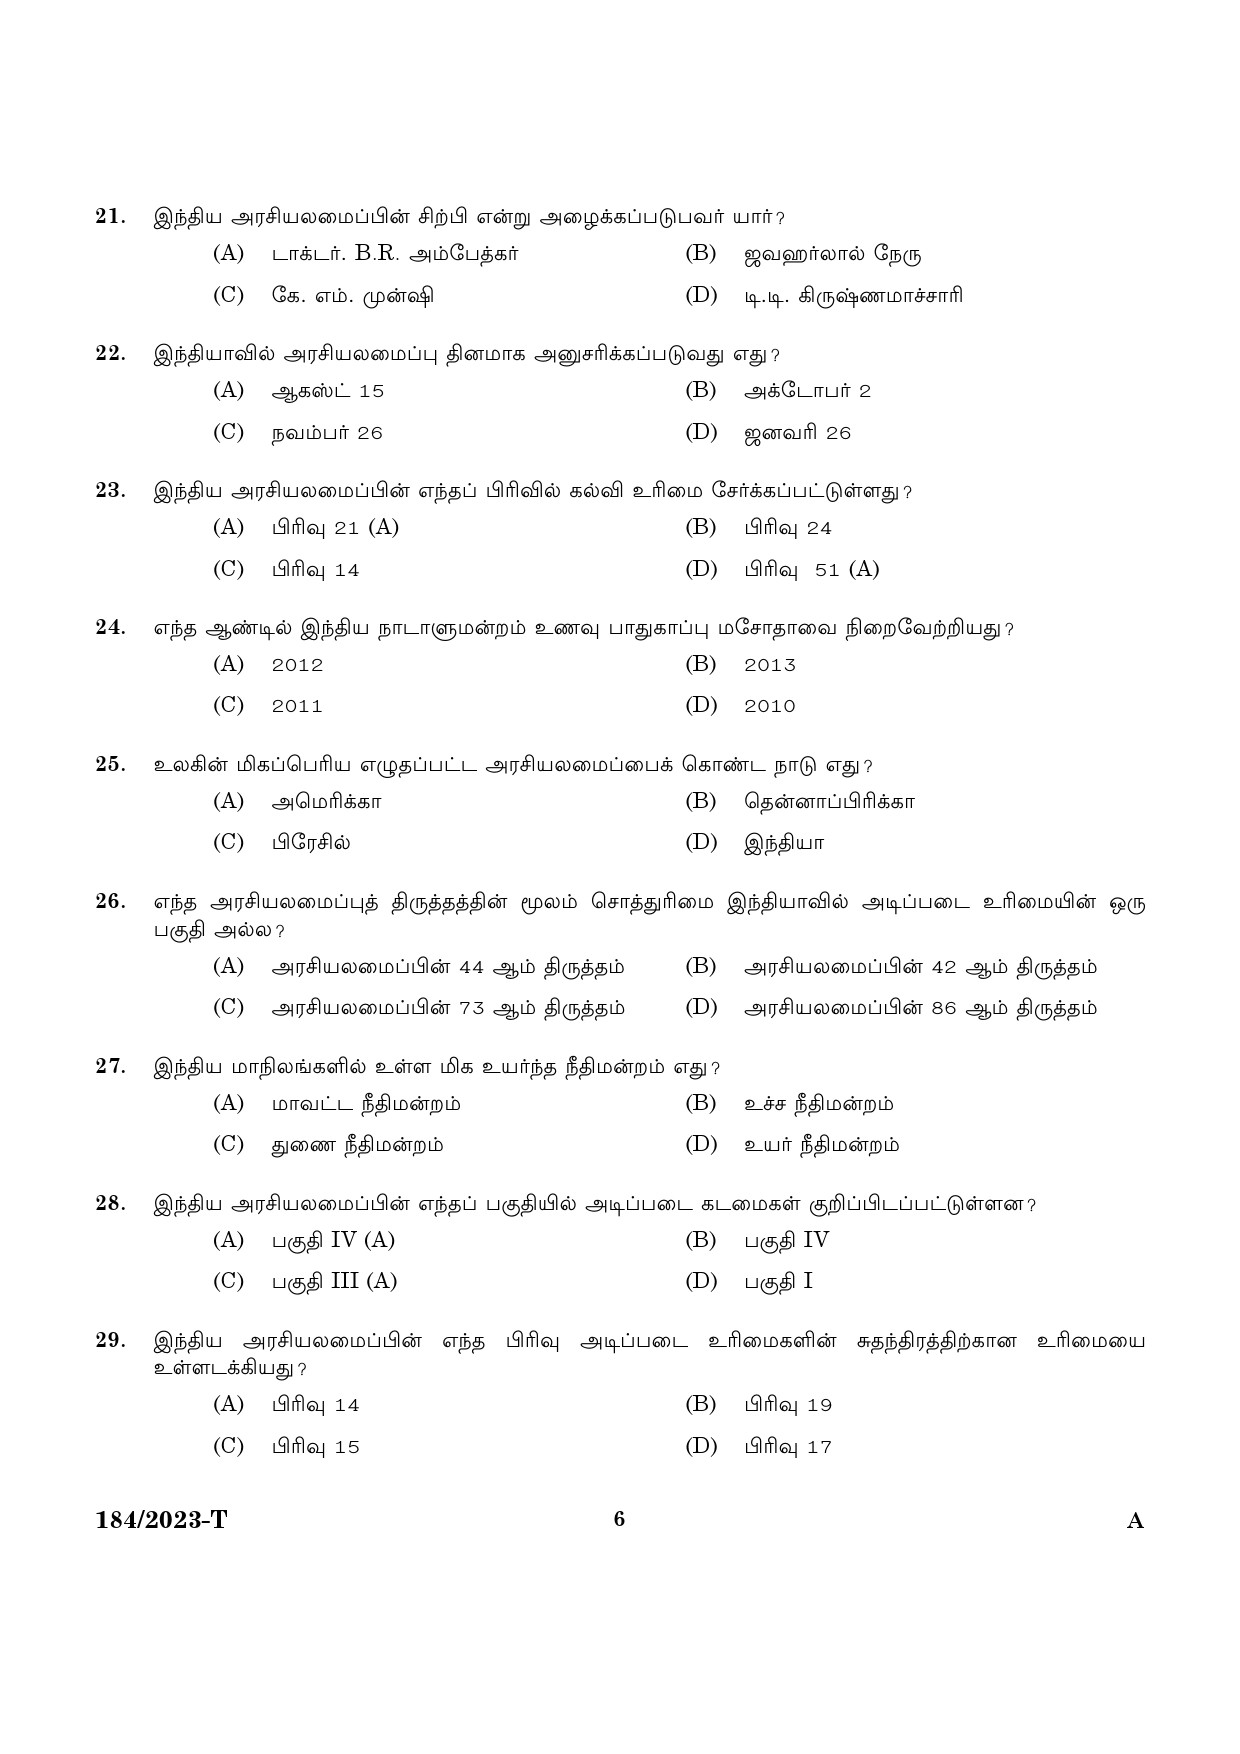 KPSC LGS Tamil Exam 2023 Code 1842023 T 4